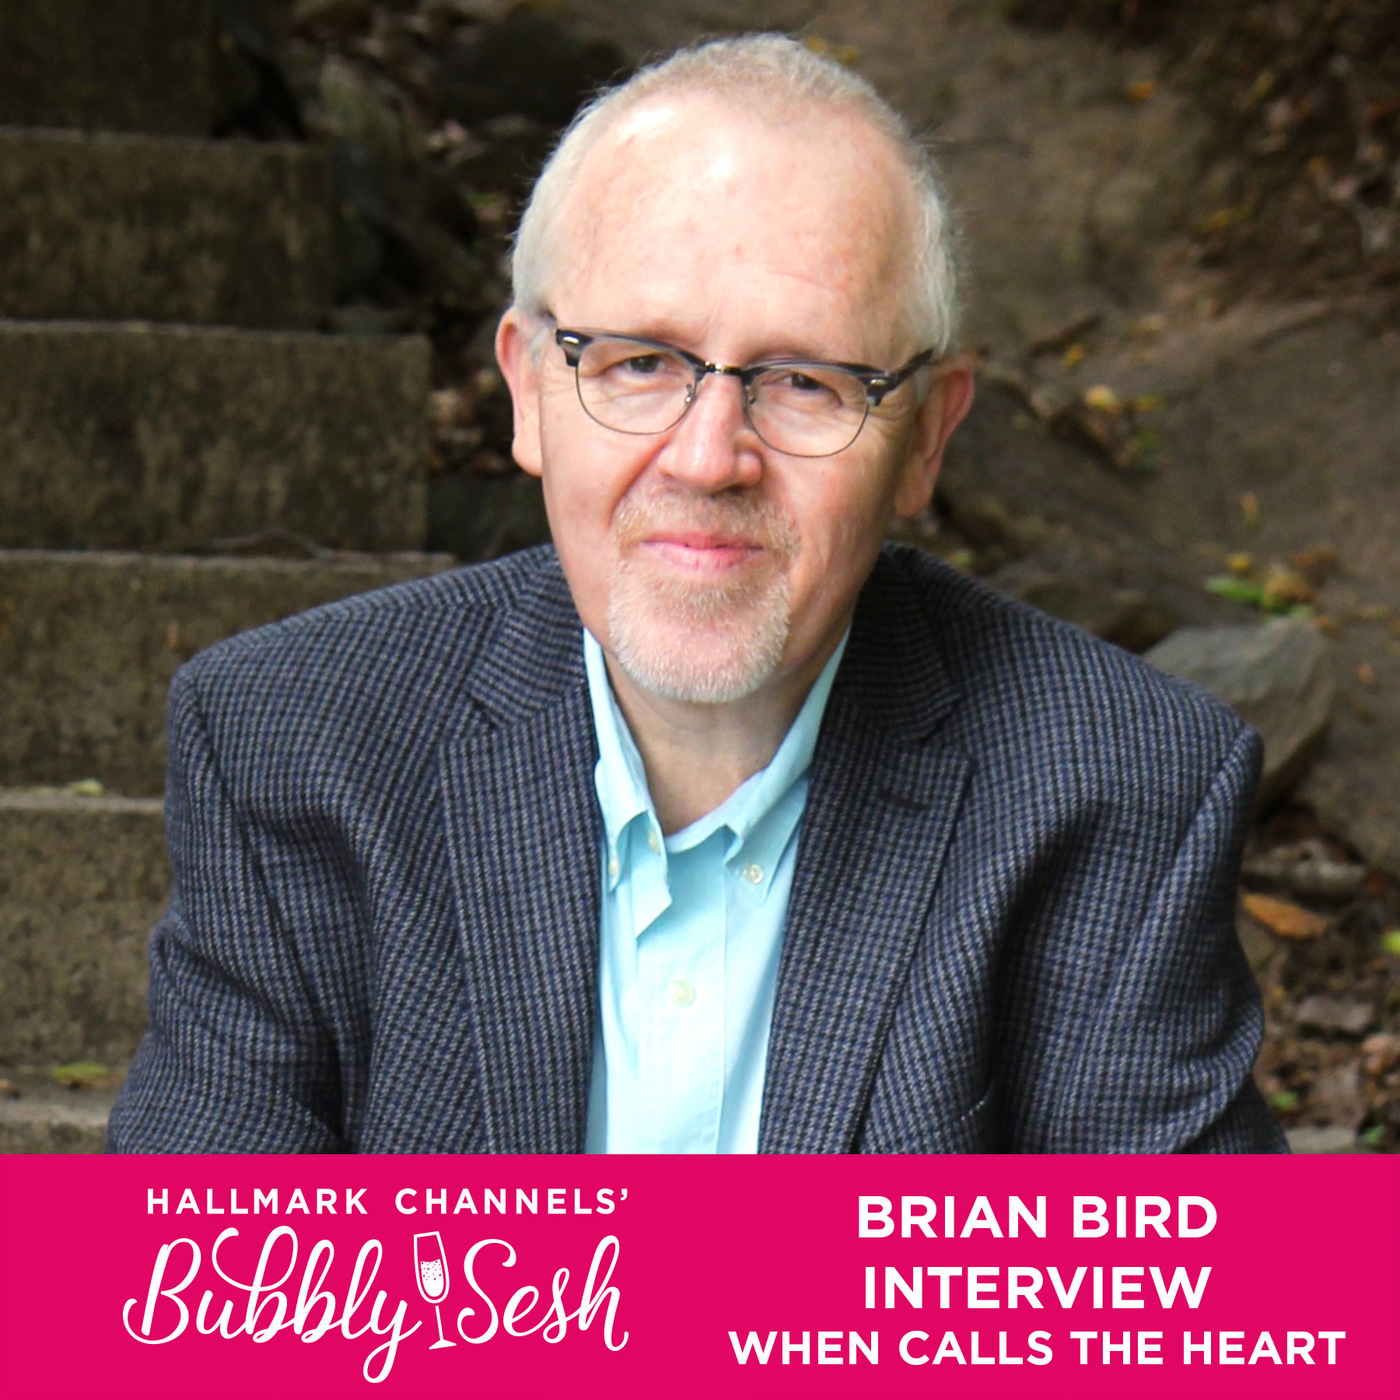 Brian Bird Interview: When Calls the Heart 